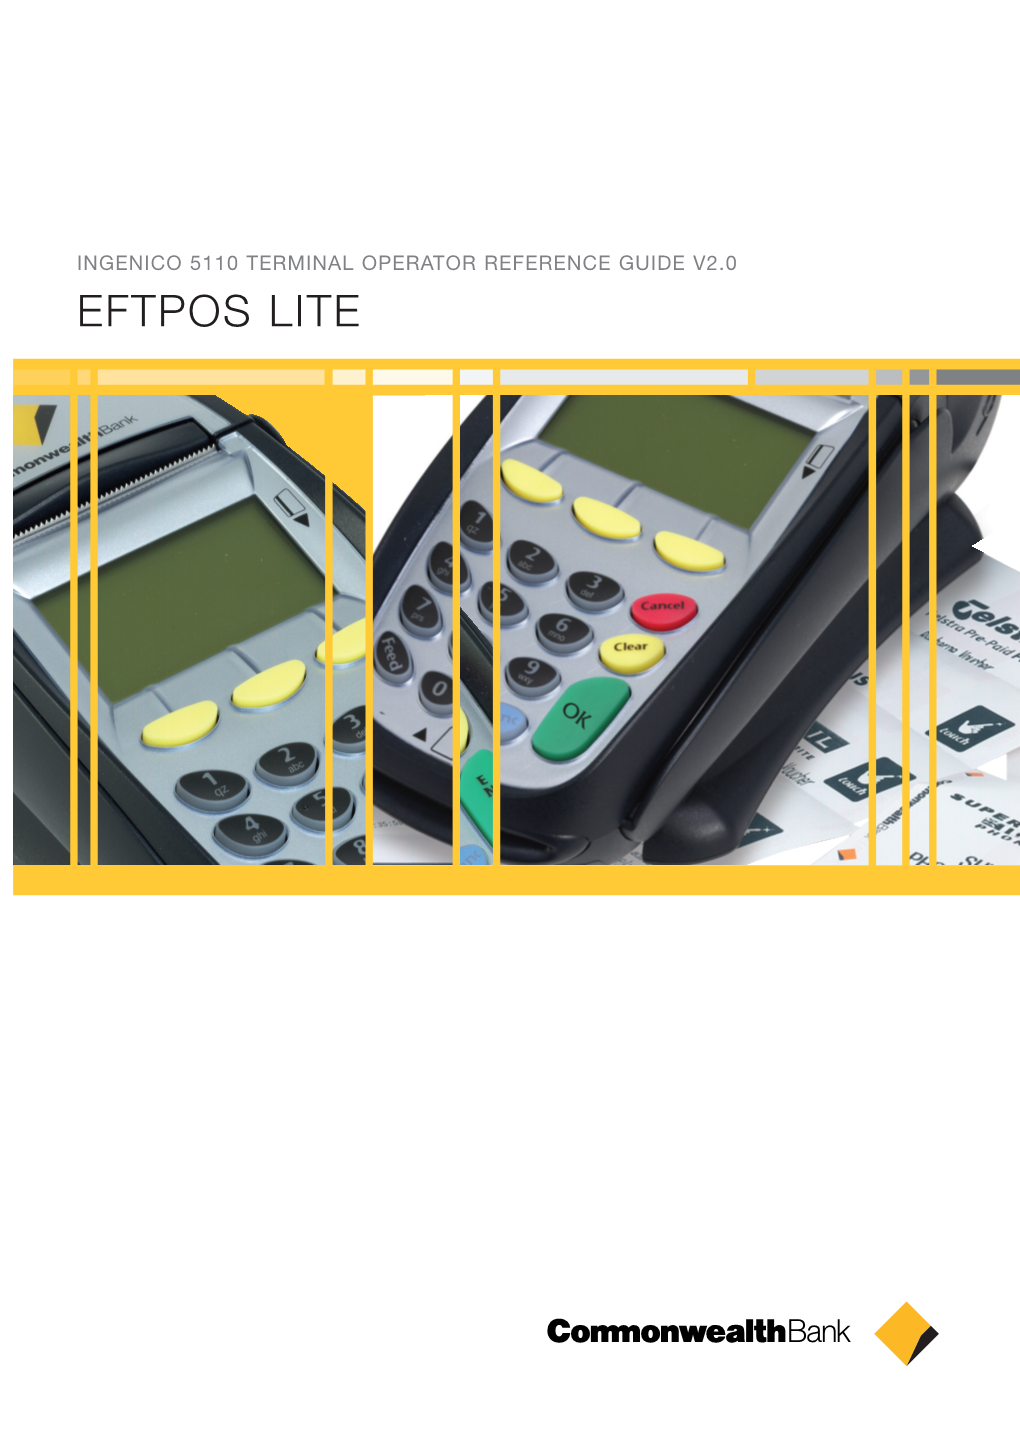 EFTPOS LITE Terminal Guide